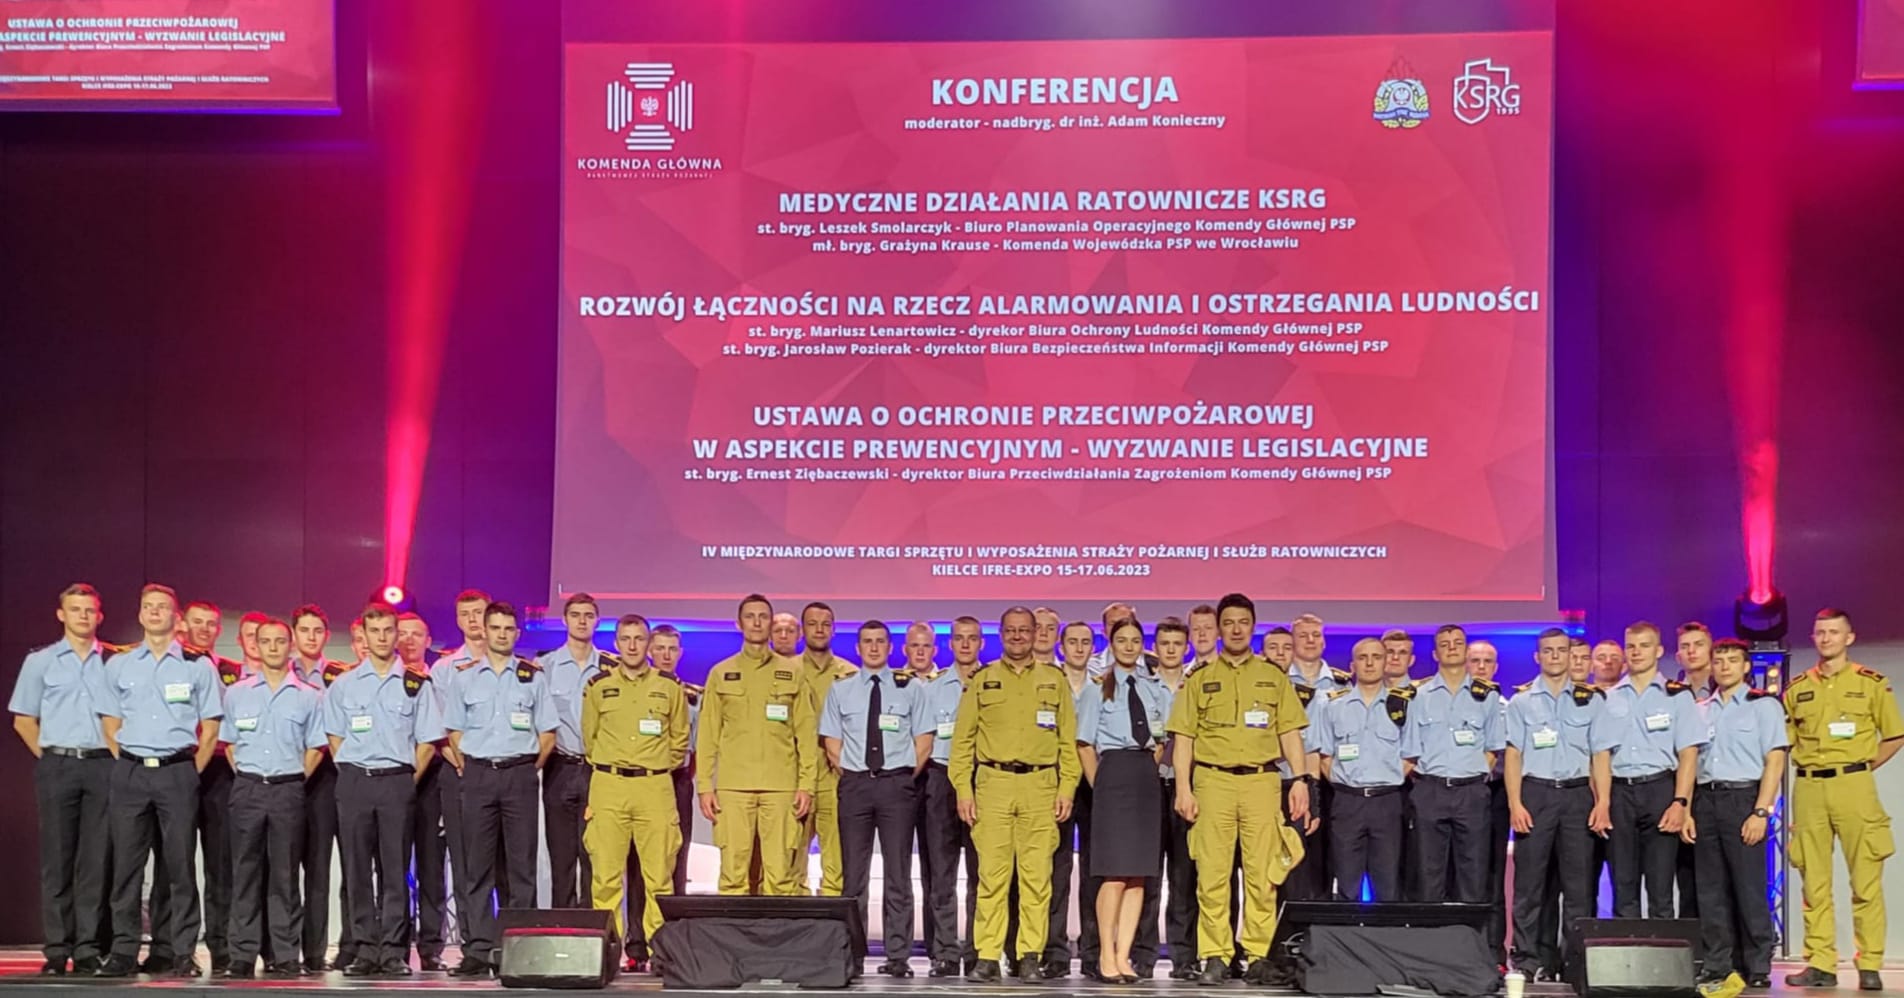 IV Międzynarodowe Targi Sprzętu i Wyposażenia Straży Pożarnej i Służb Ratowniczych Kielce IFRE-EXPO